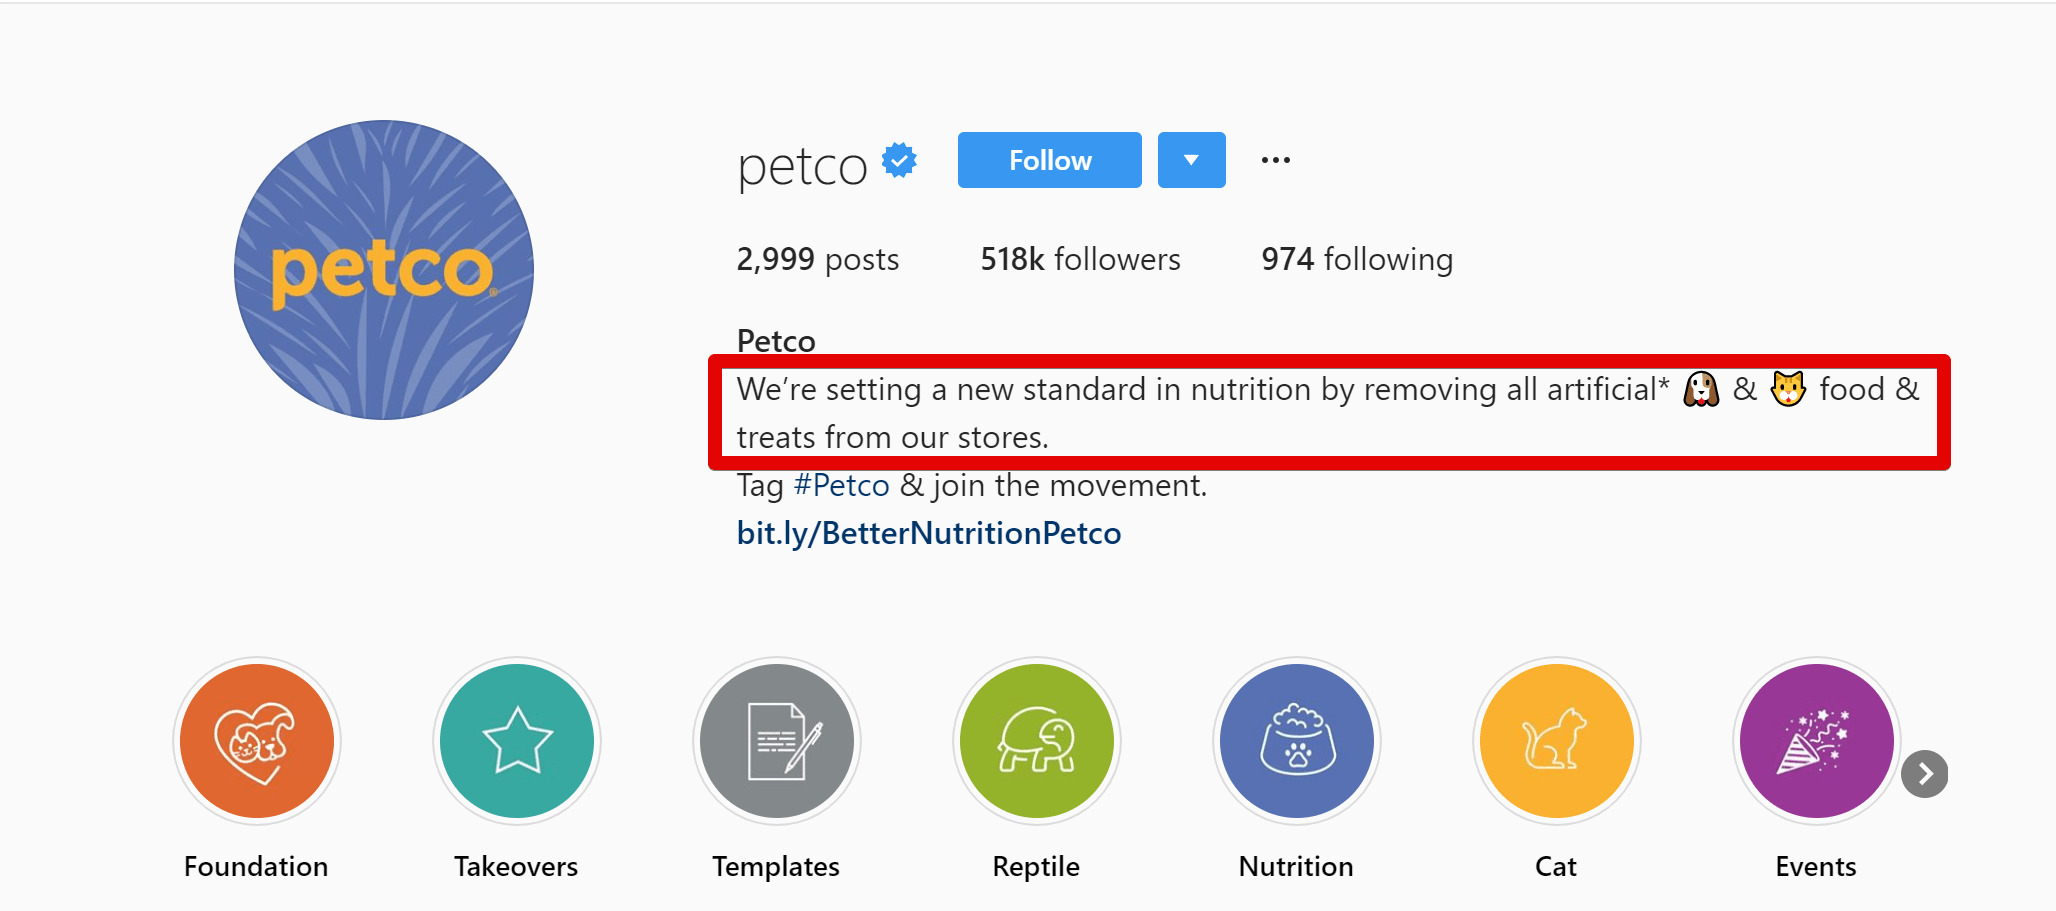 Petco’s cool Instagram bio